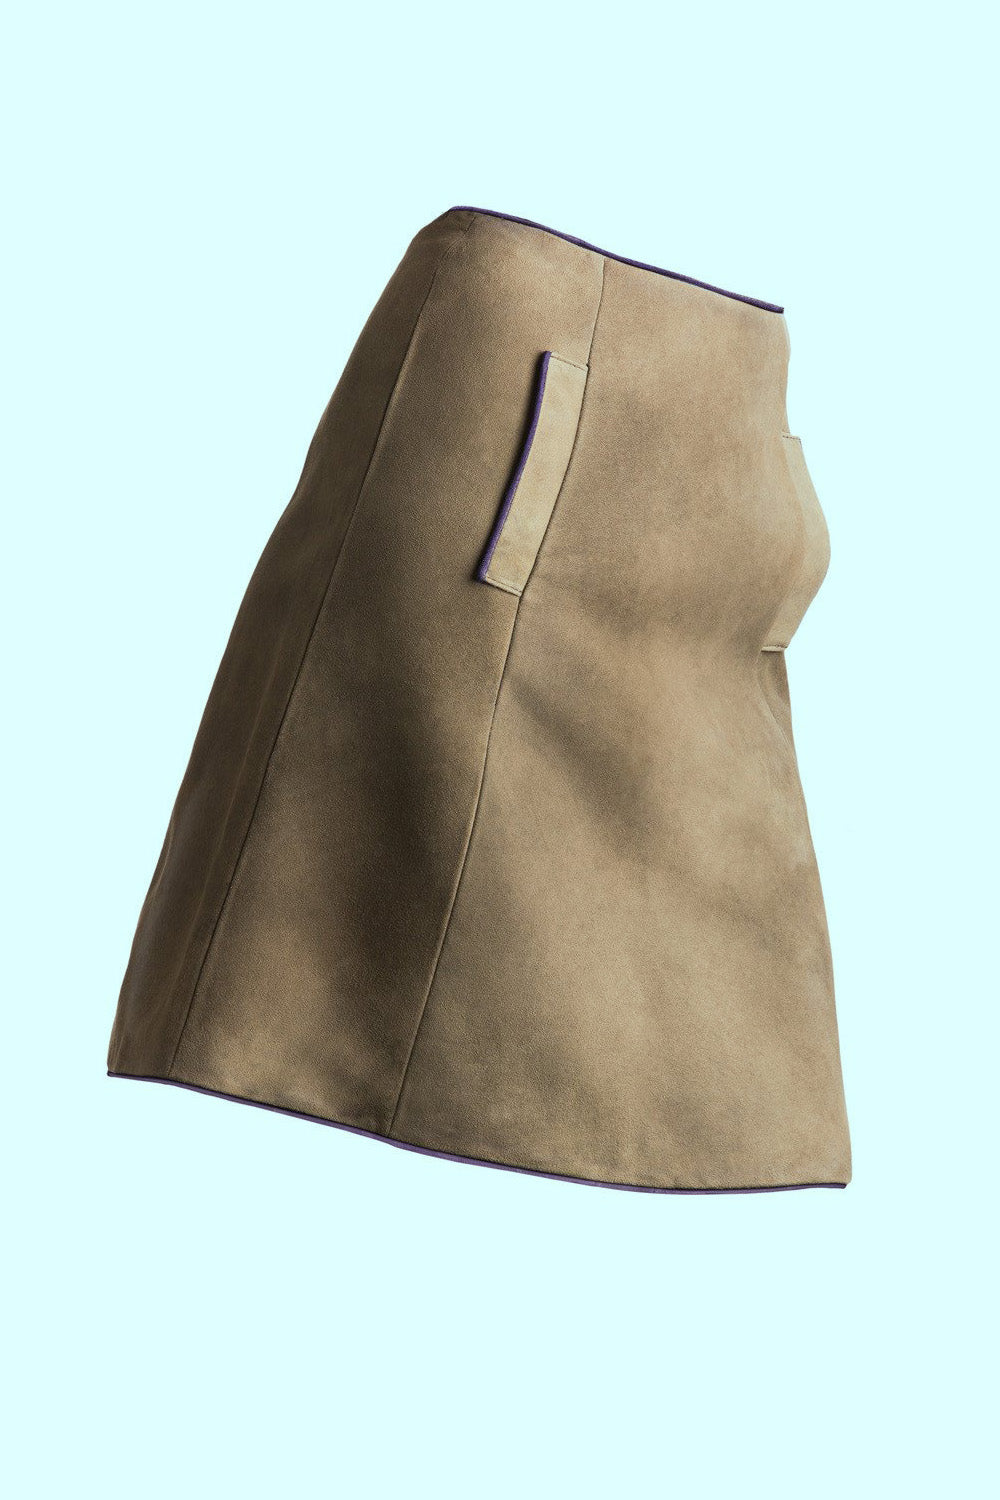 Produktbild Klassischer Hirschlederrock in A-Linie mit seitlichen Taschen  von FederRock